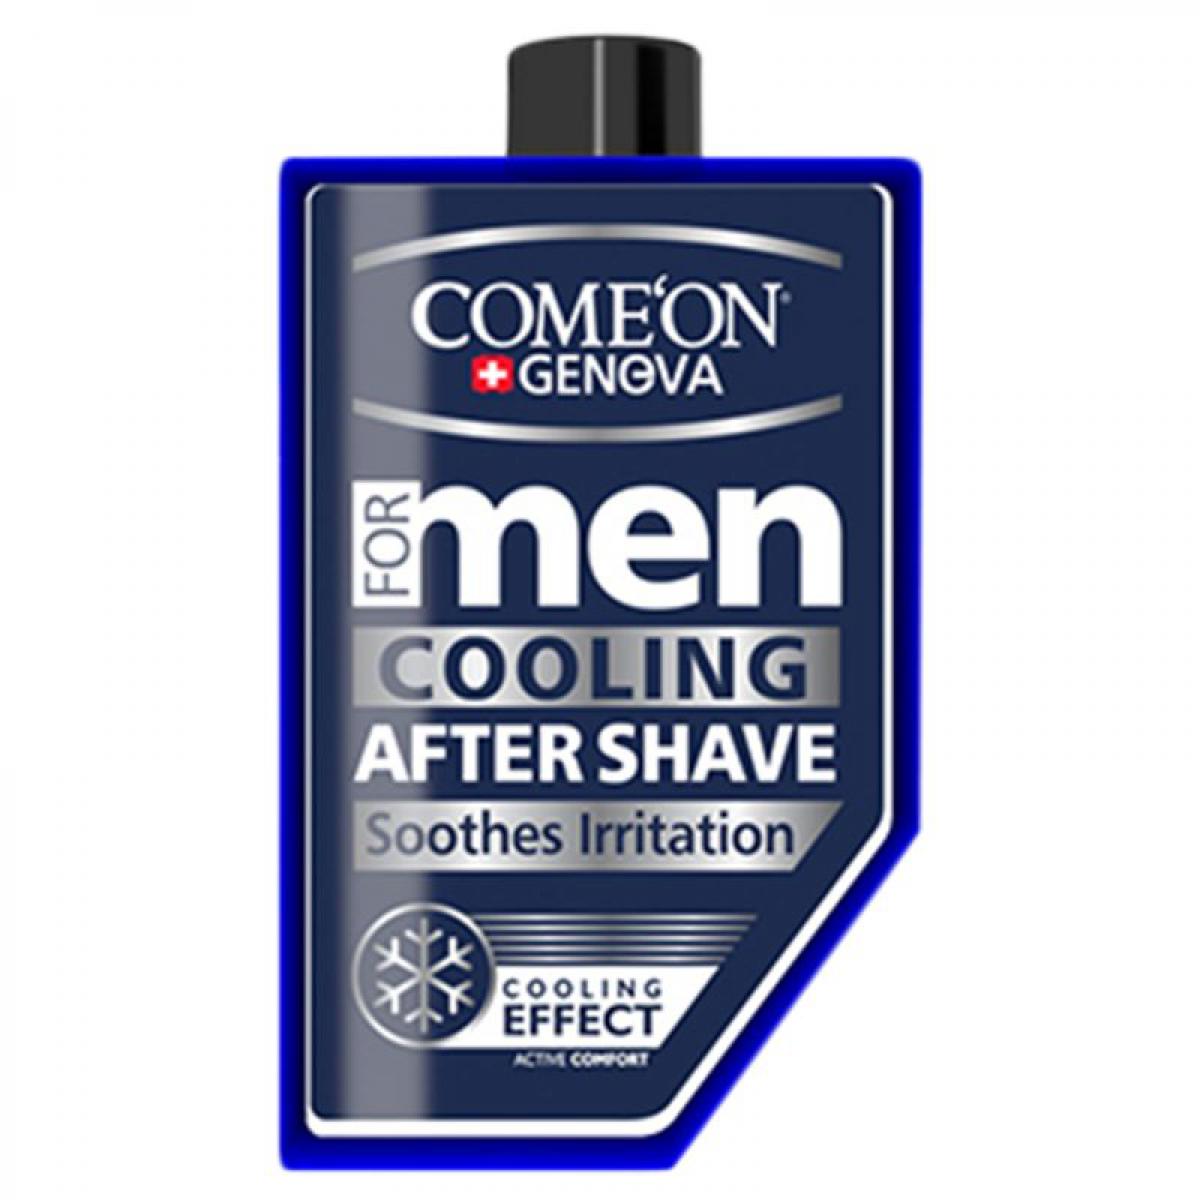 افتر شیو آبرسان با خاصیت رطوبت رسانی و خنک کنندگی - Comeon Men Cooling After Shave 260ml